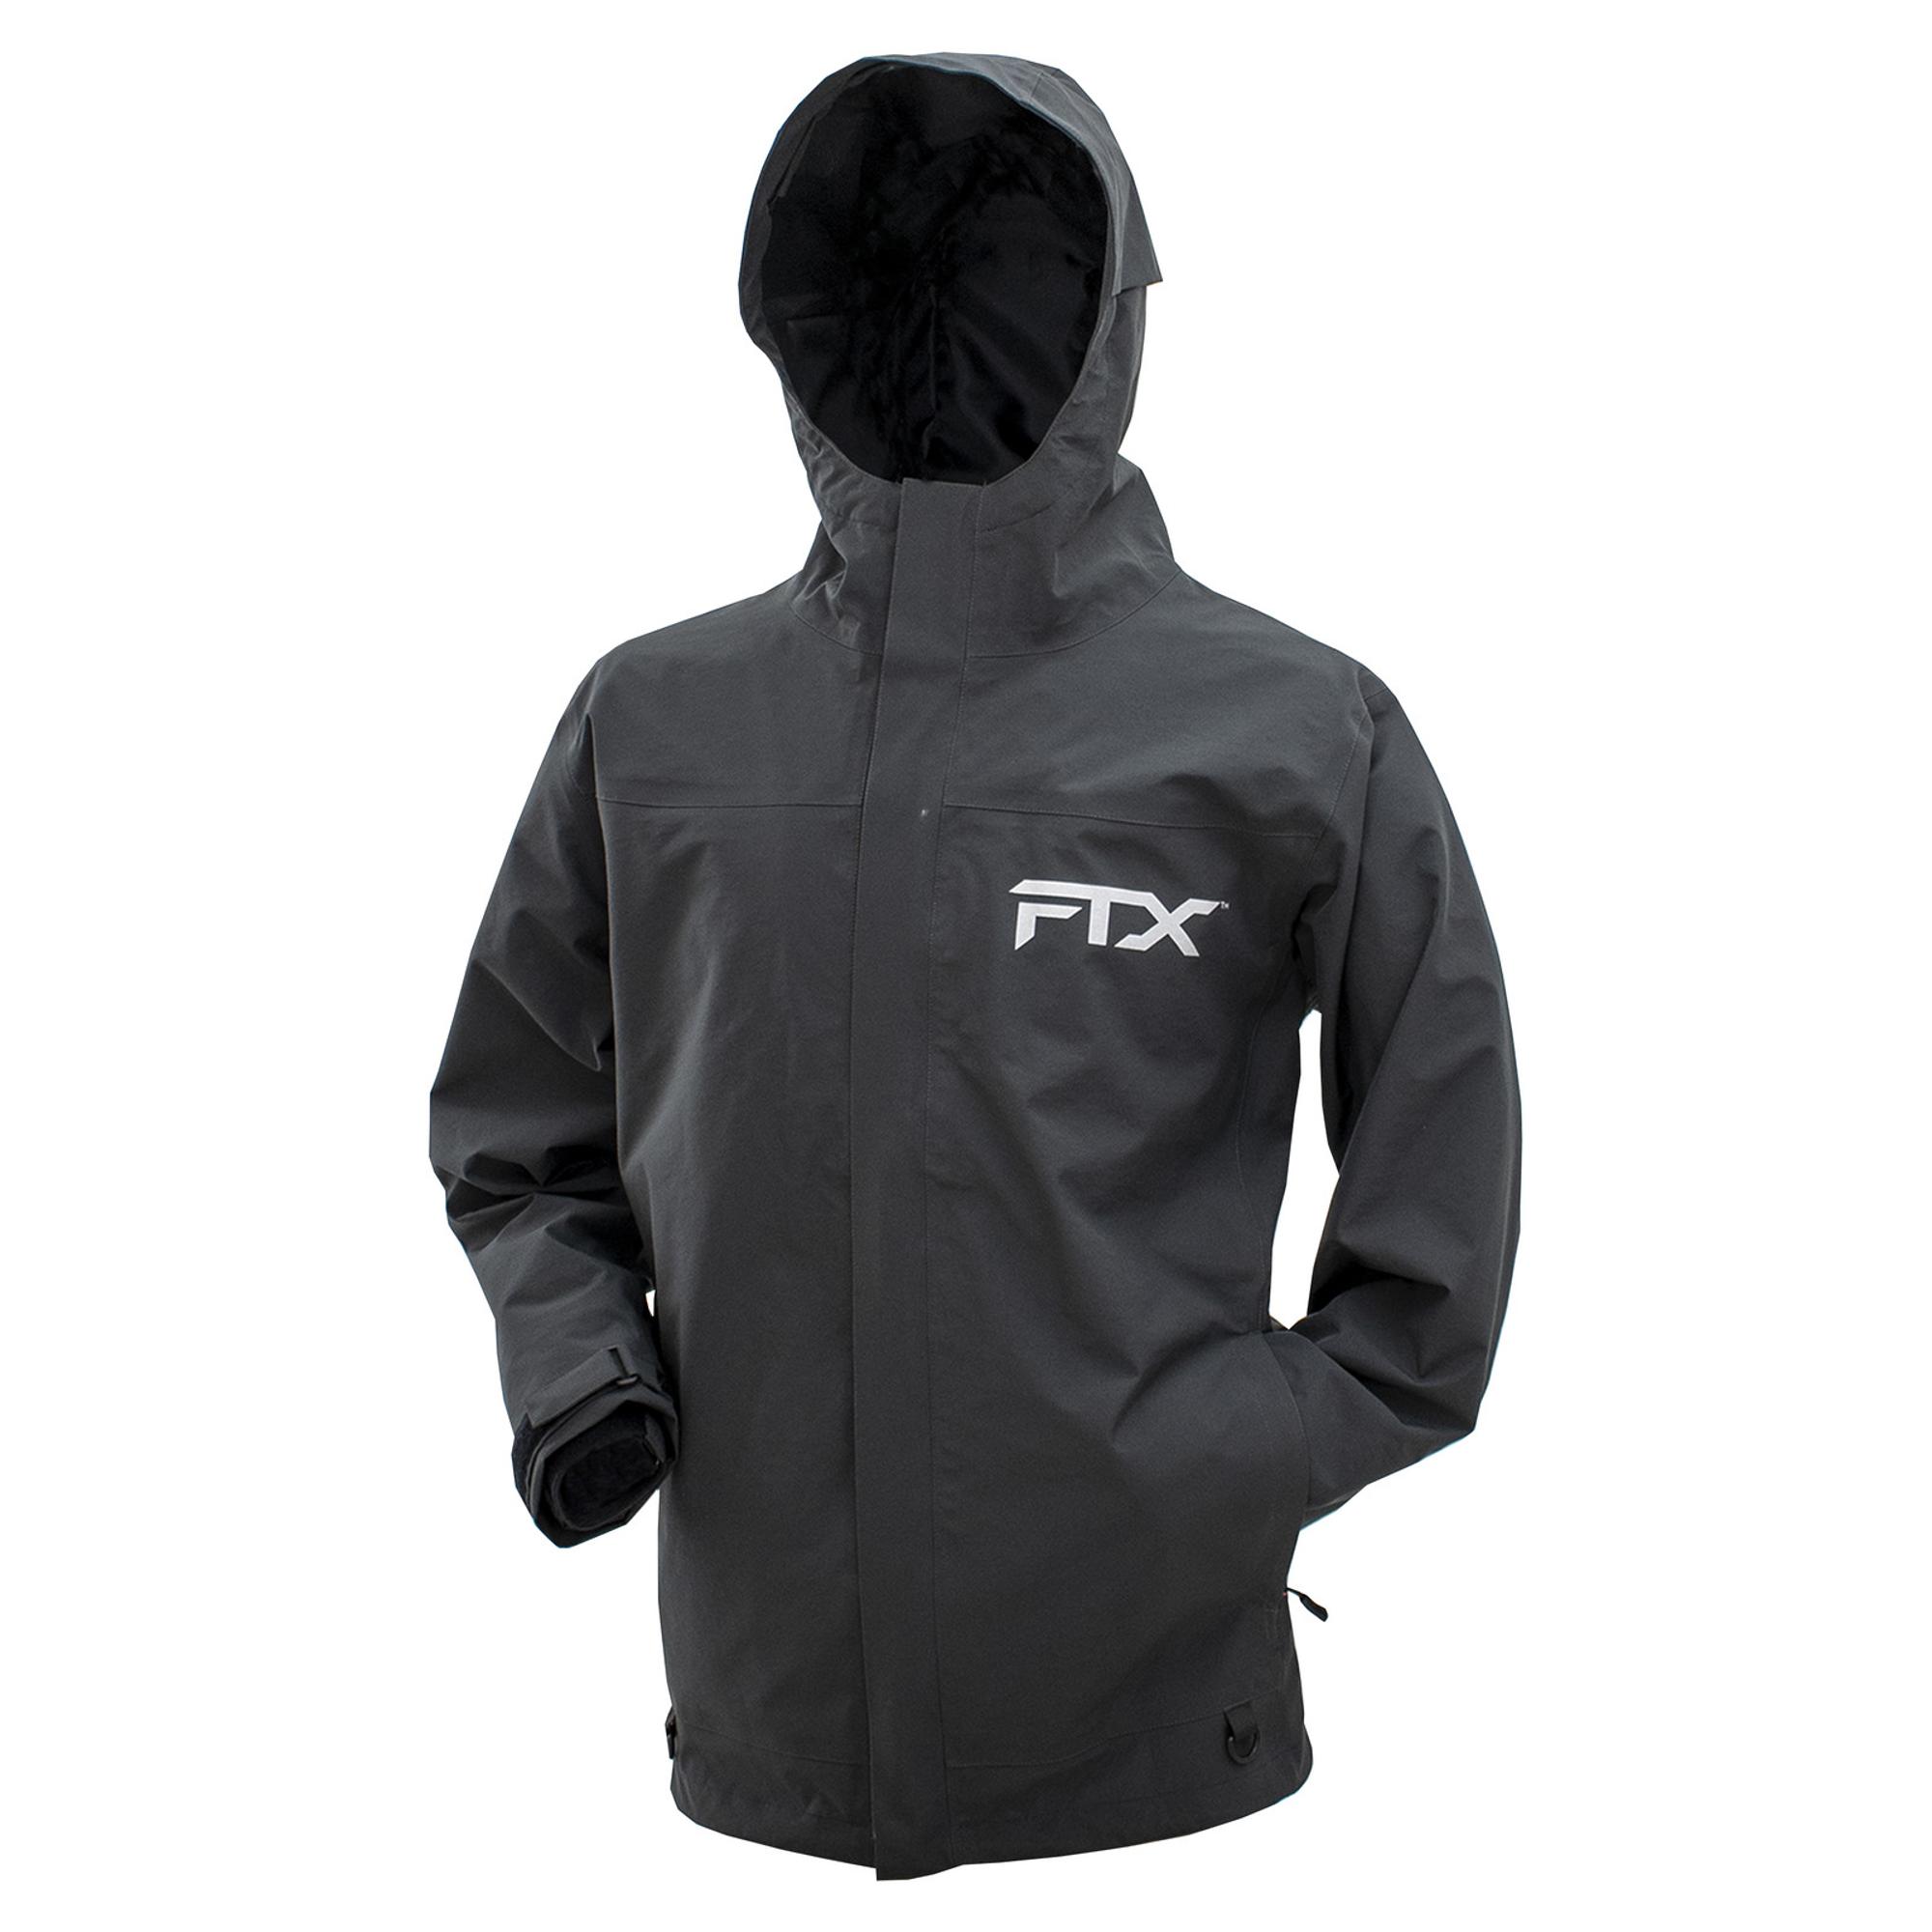 Ftx Armor Jacket